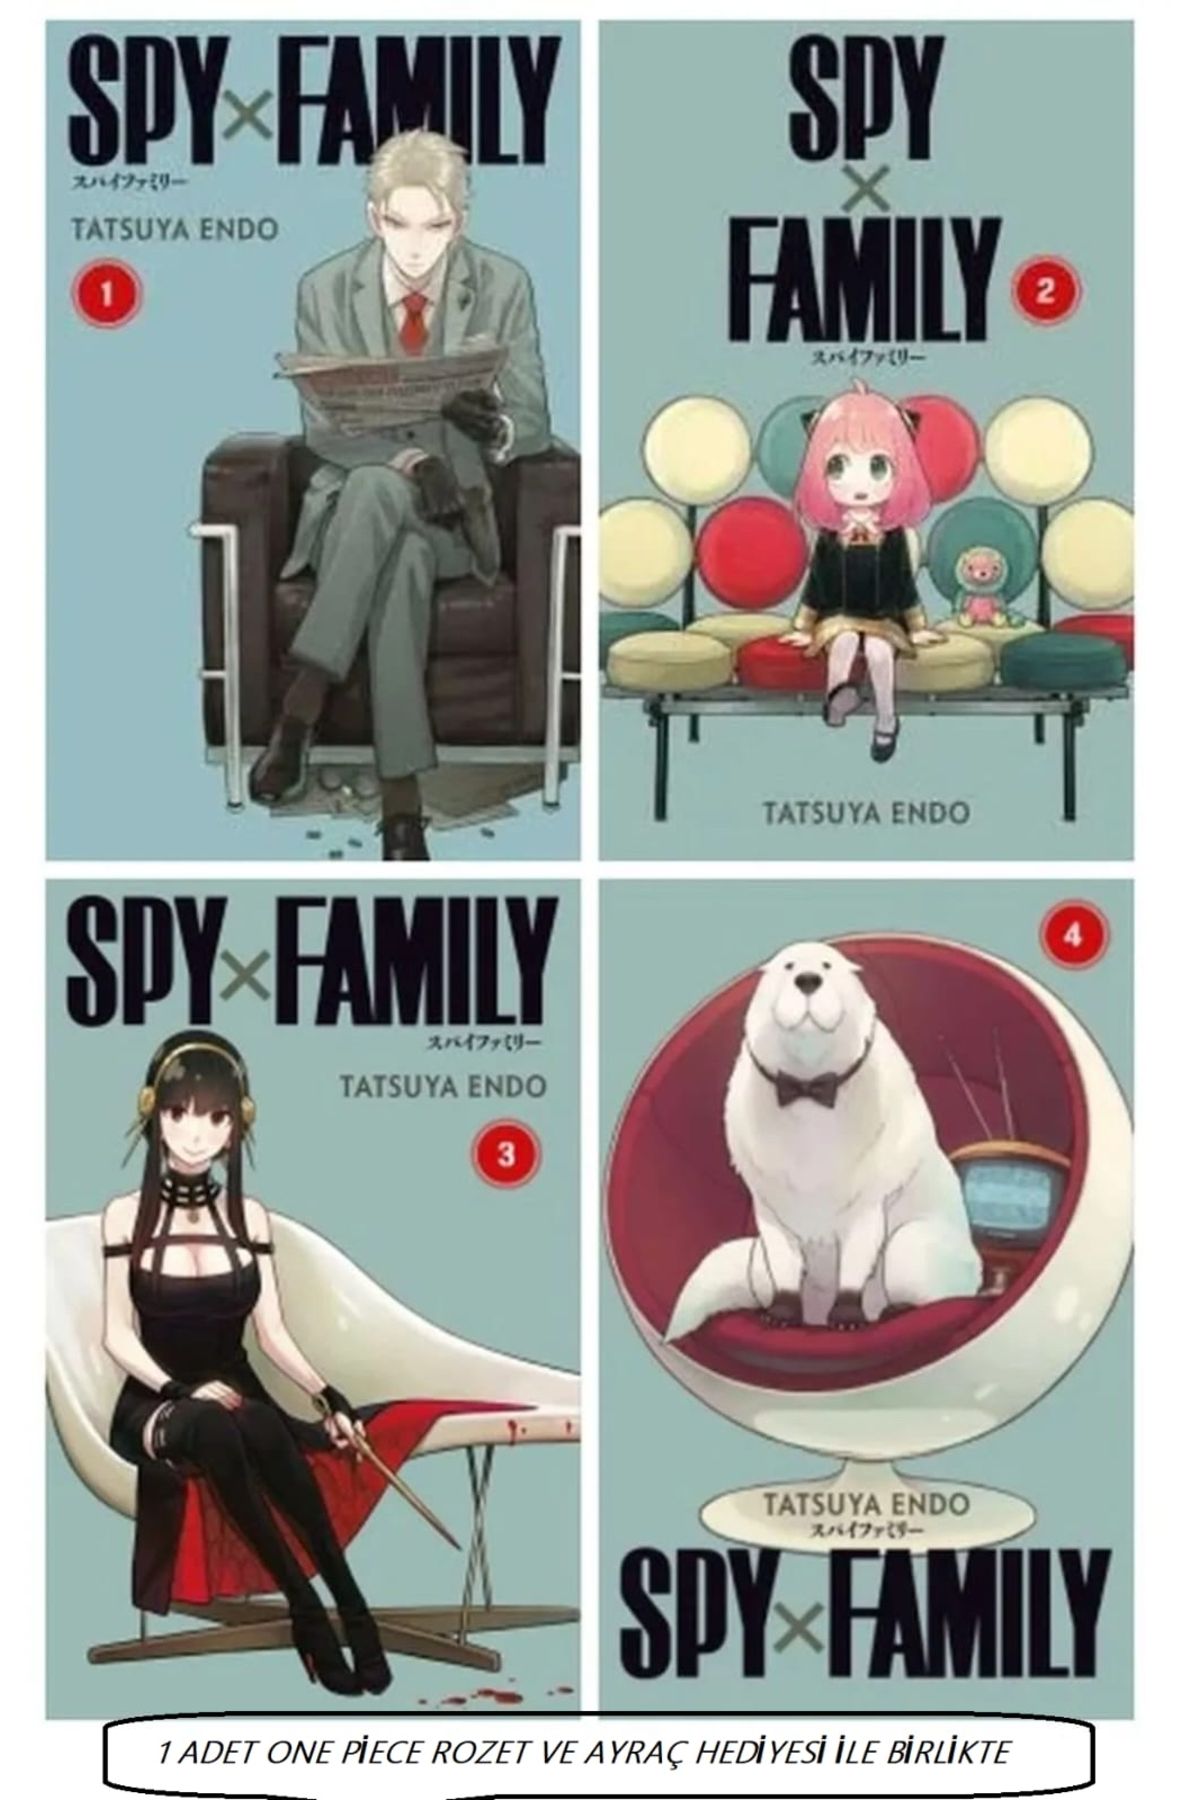 Gerekli Şeyler Yayıncılık Spy Family 1-4 manga (One piece rozet hediyeli)